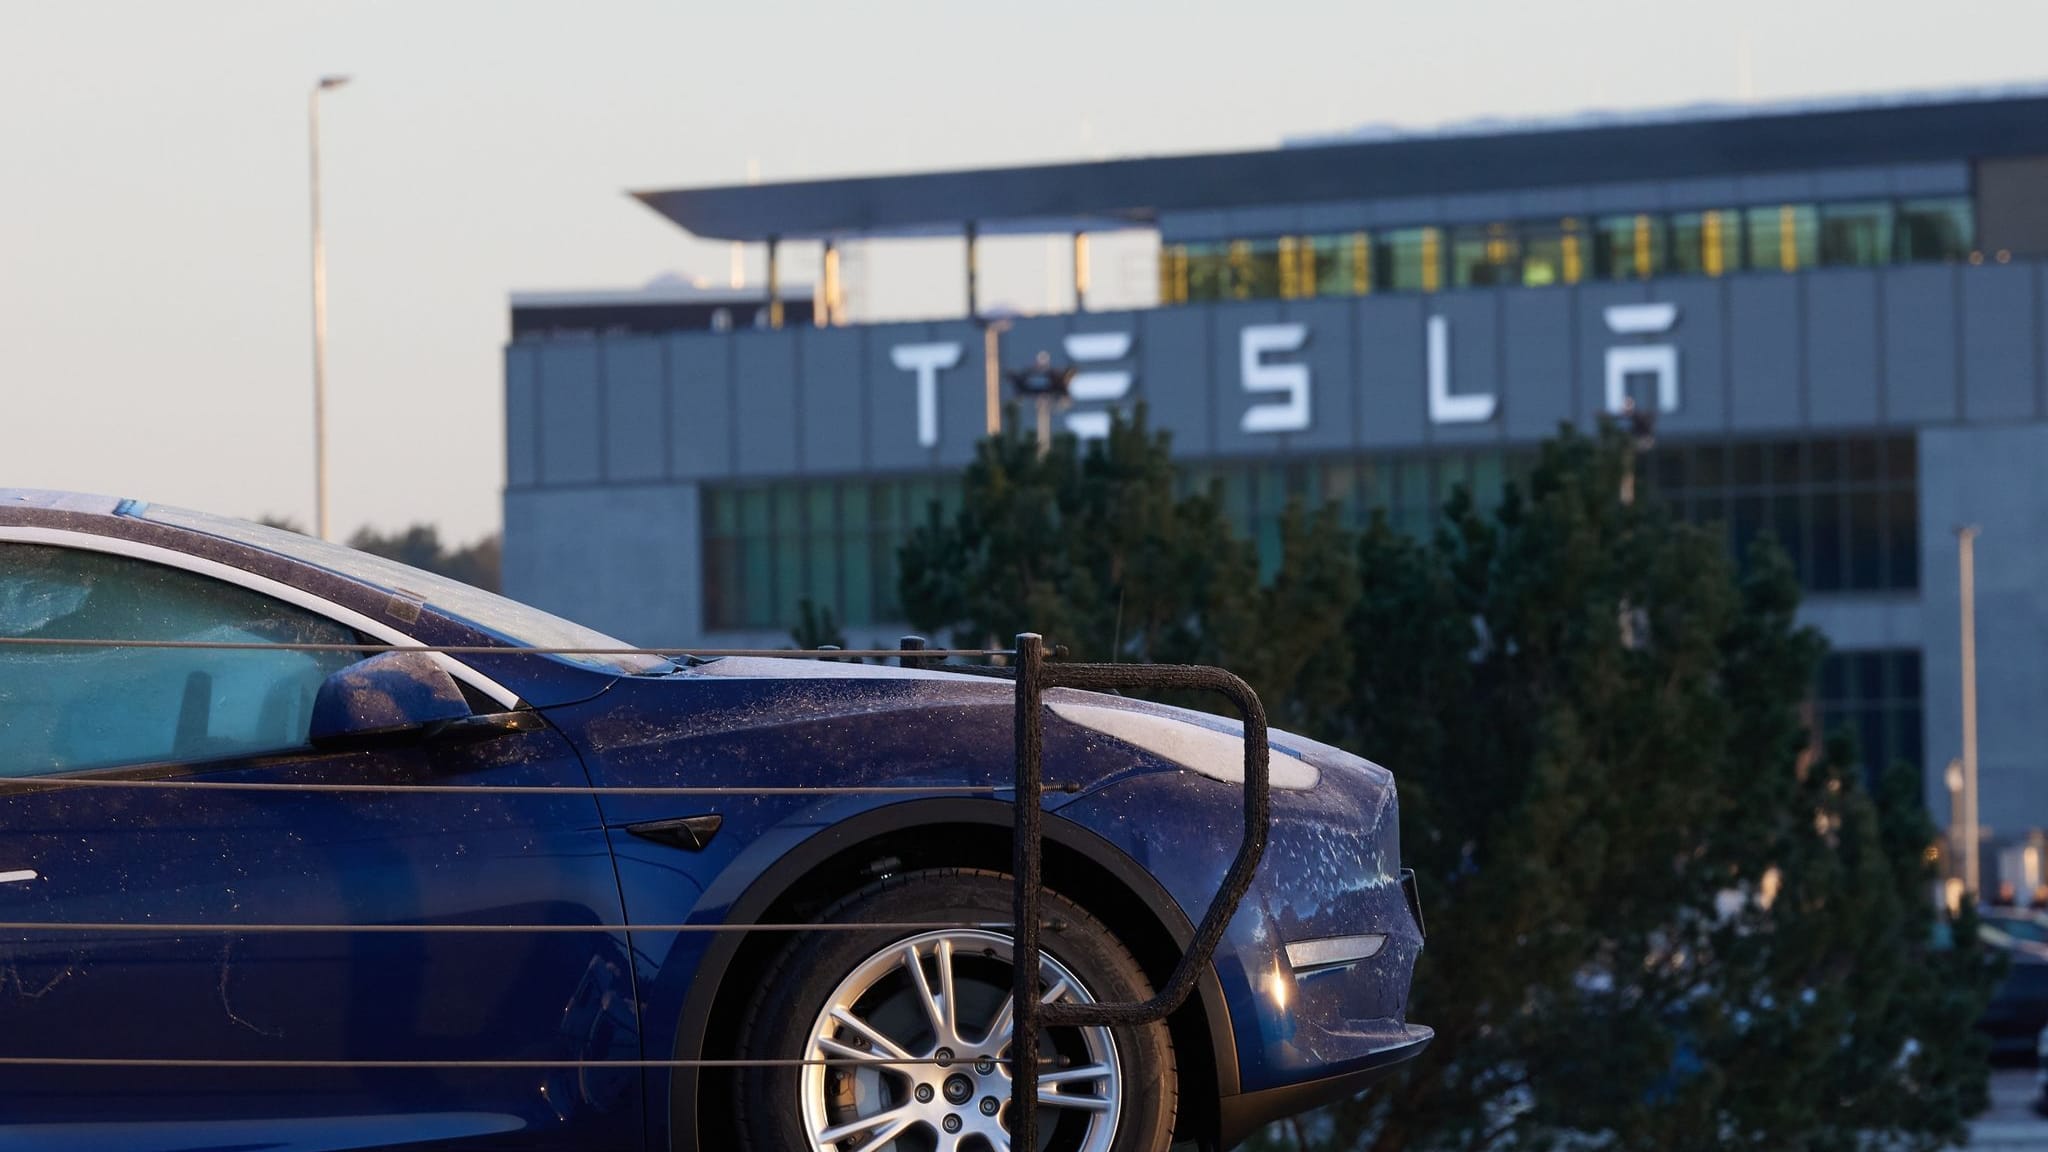 Tesla sagt Zusammenarbeit mit Betriebsrat zu